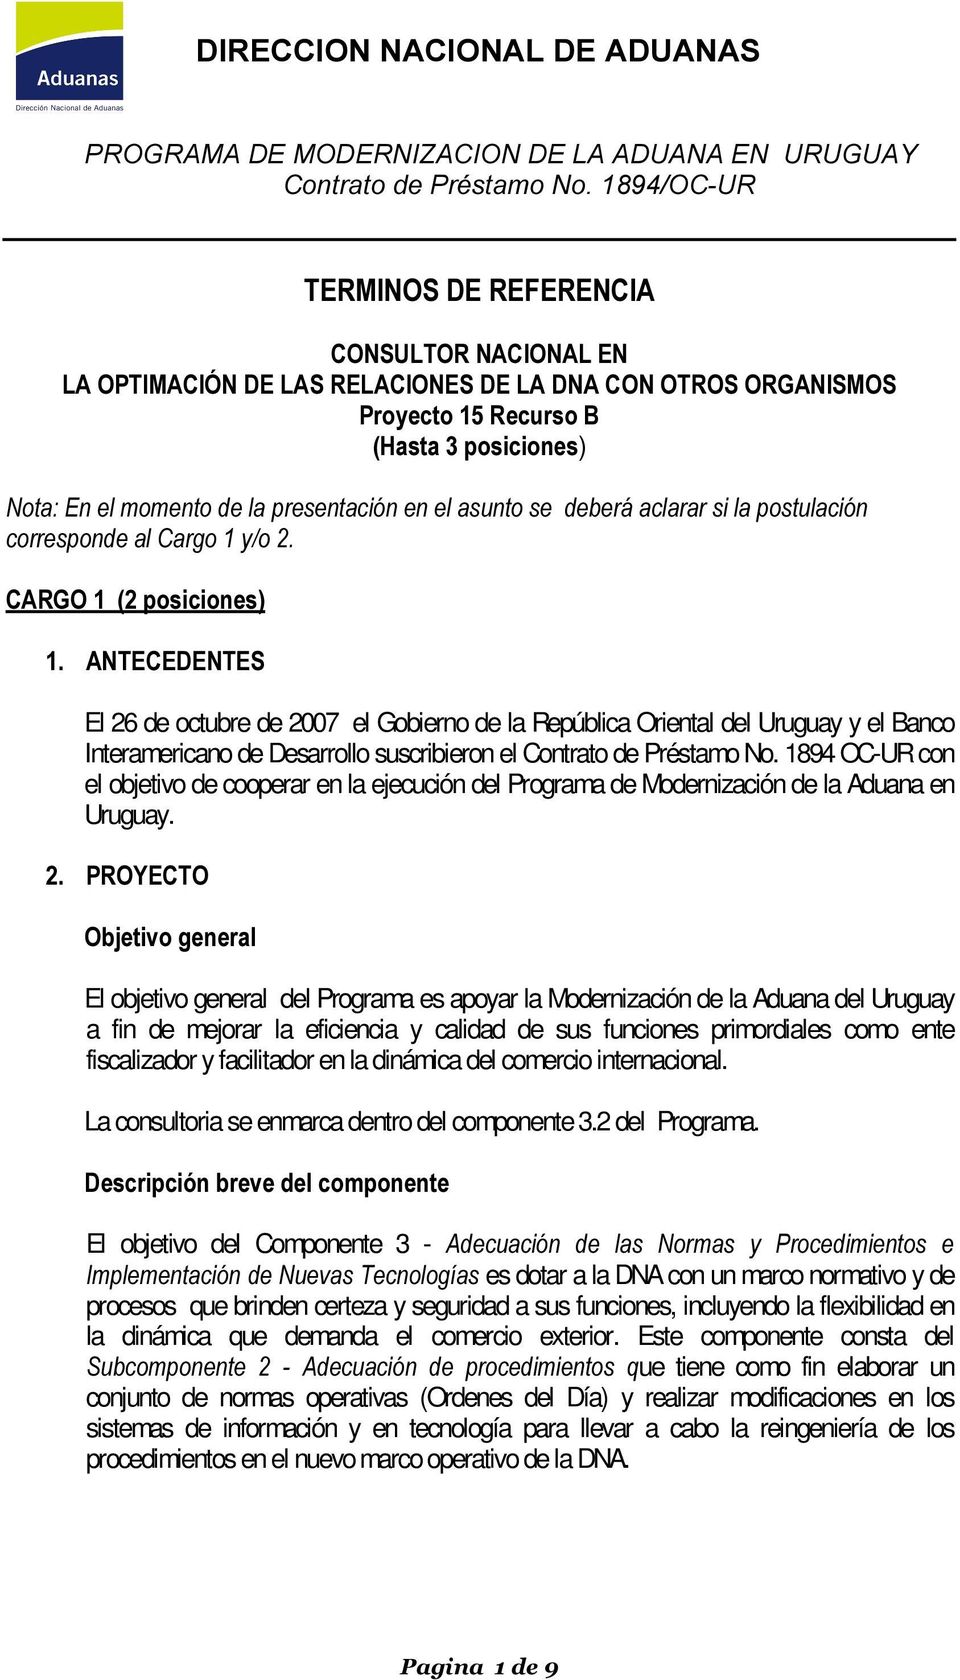 Préstamo No. 1894 OC-UR con el objetivo de cooperar en la ejecución del Programa de Modernización de la Aduana en Uruguay.